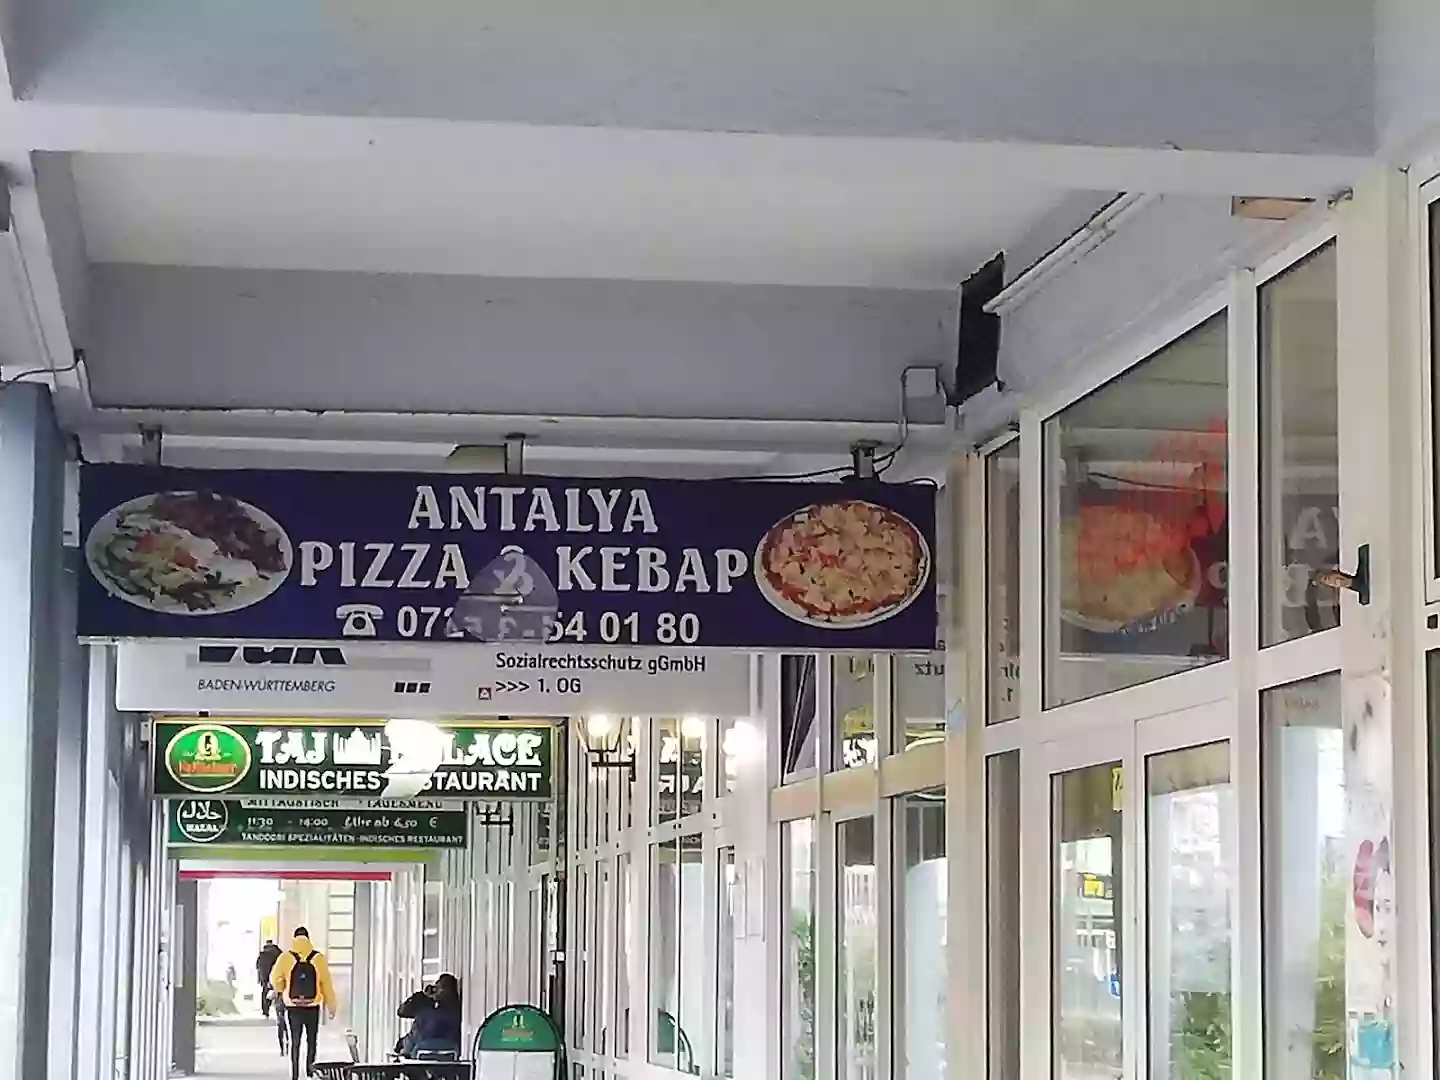 Antalya Pizza & Kebaphaus